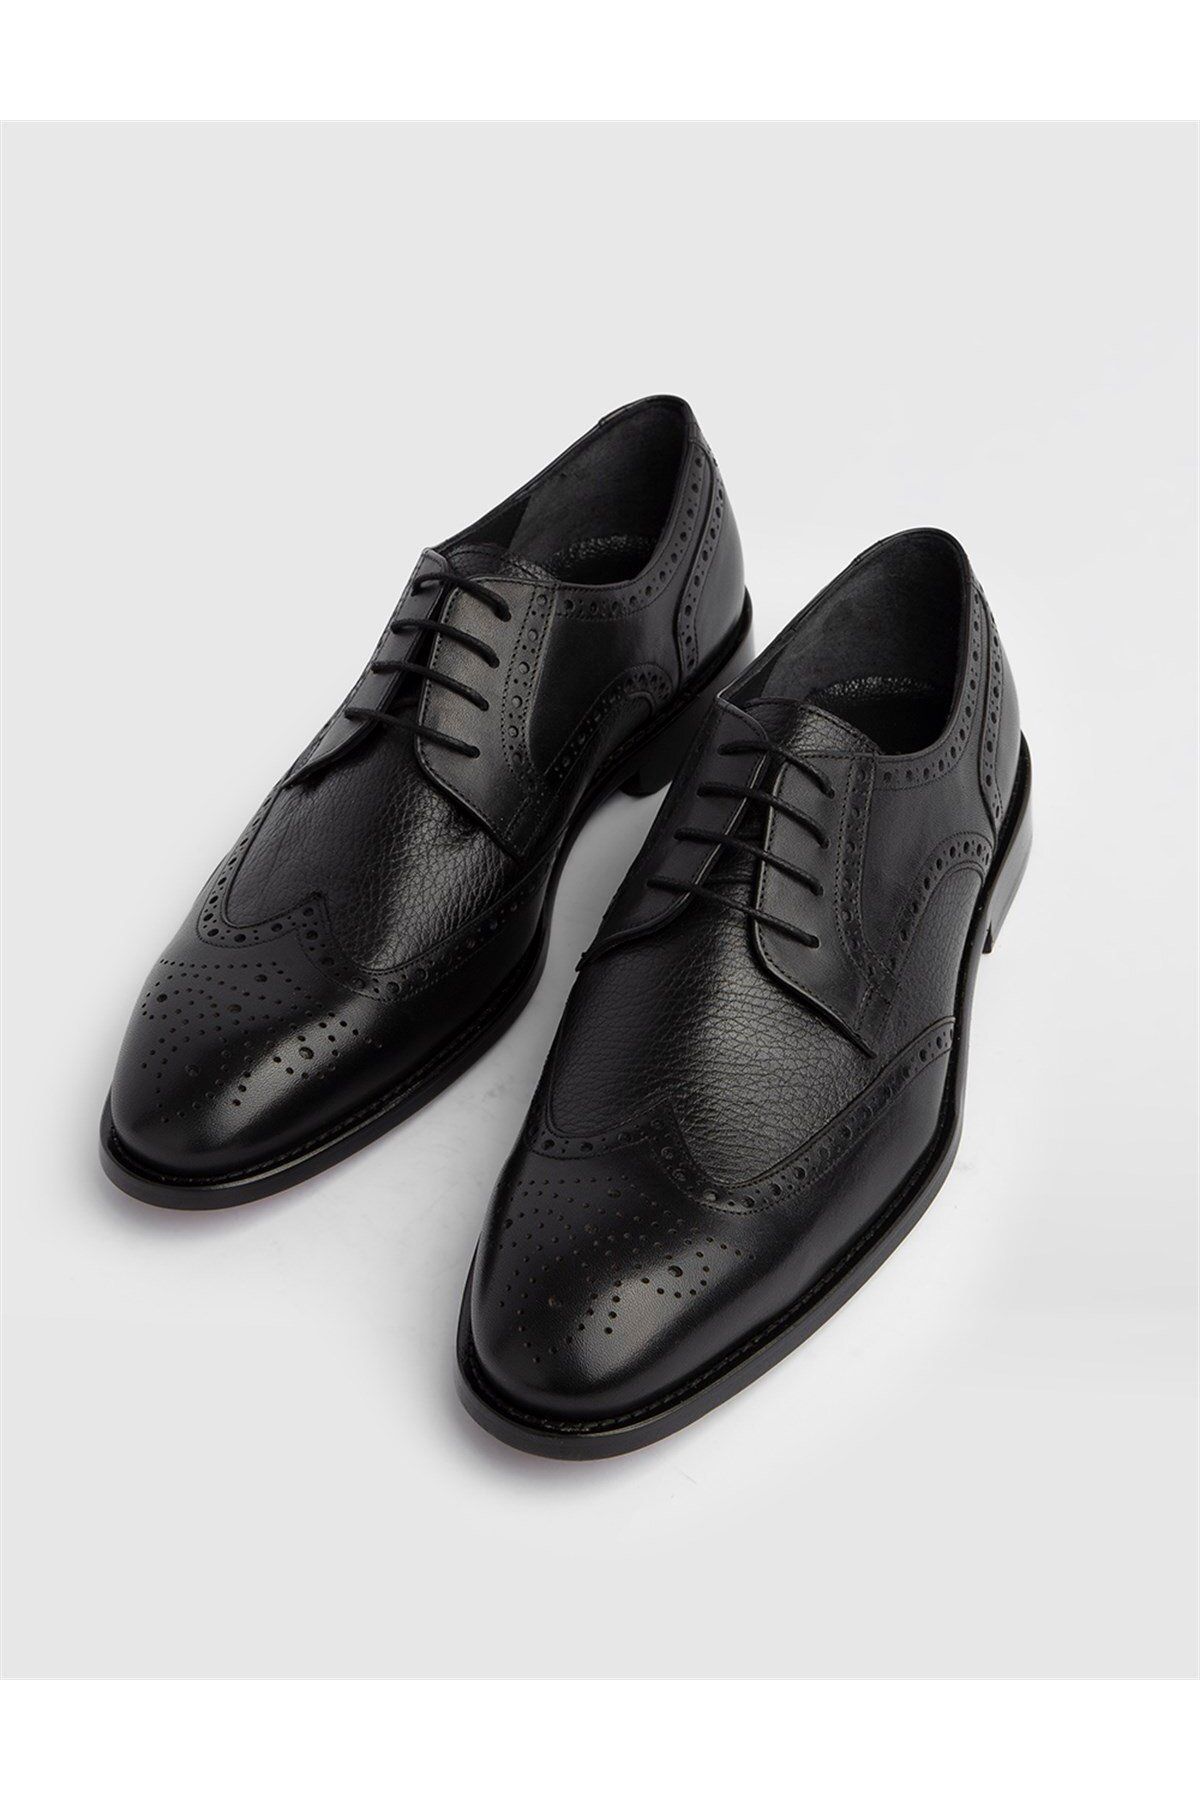 İlvi Dalr Hakiki Antik Deri Erkek Siyah Klasik Ayakkabı